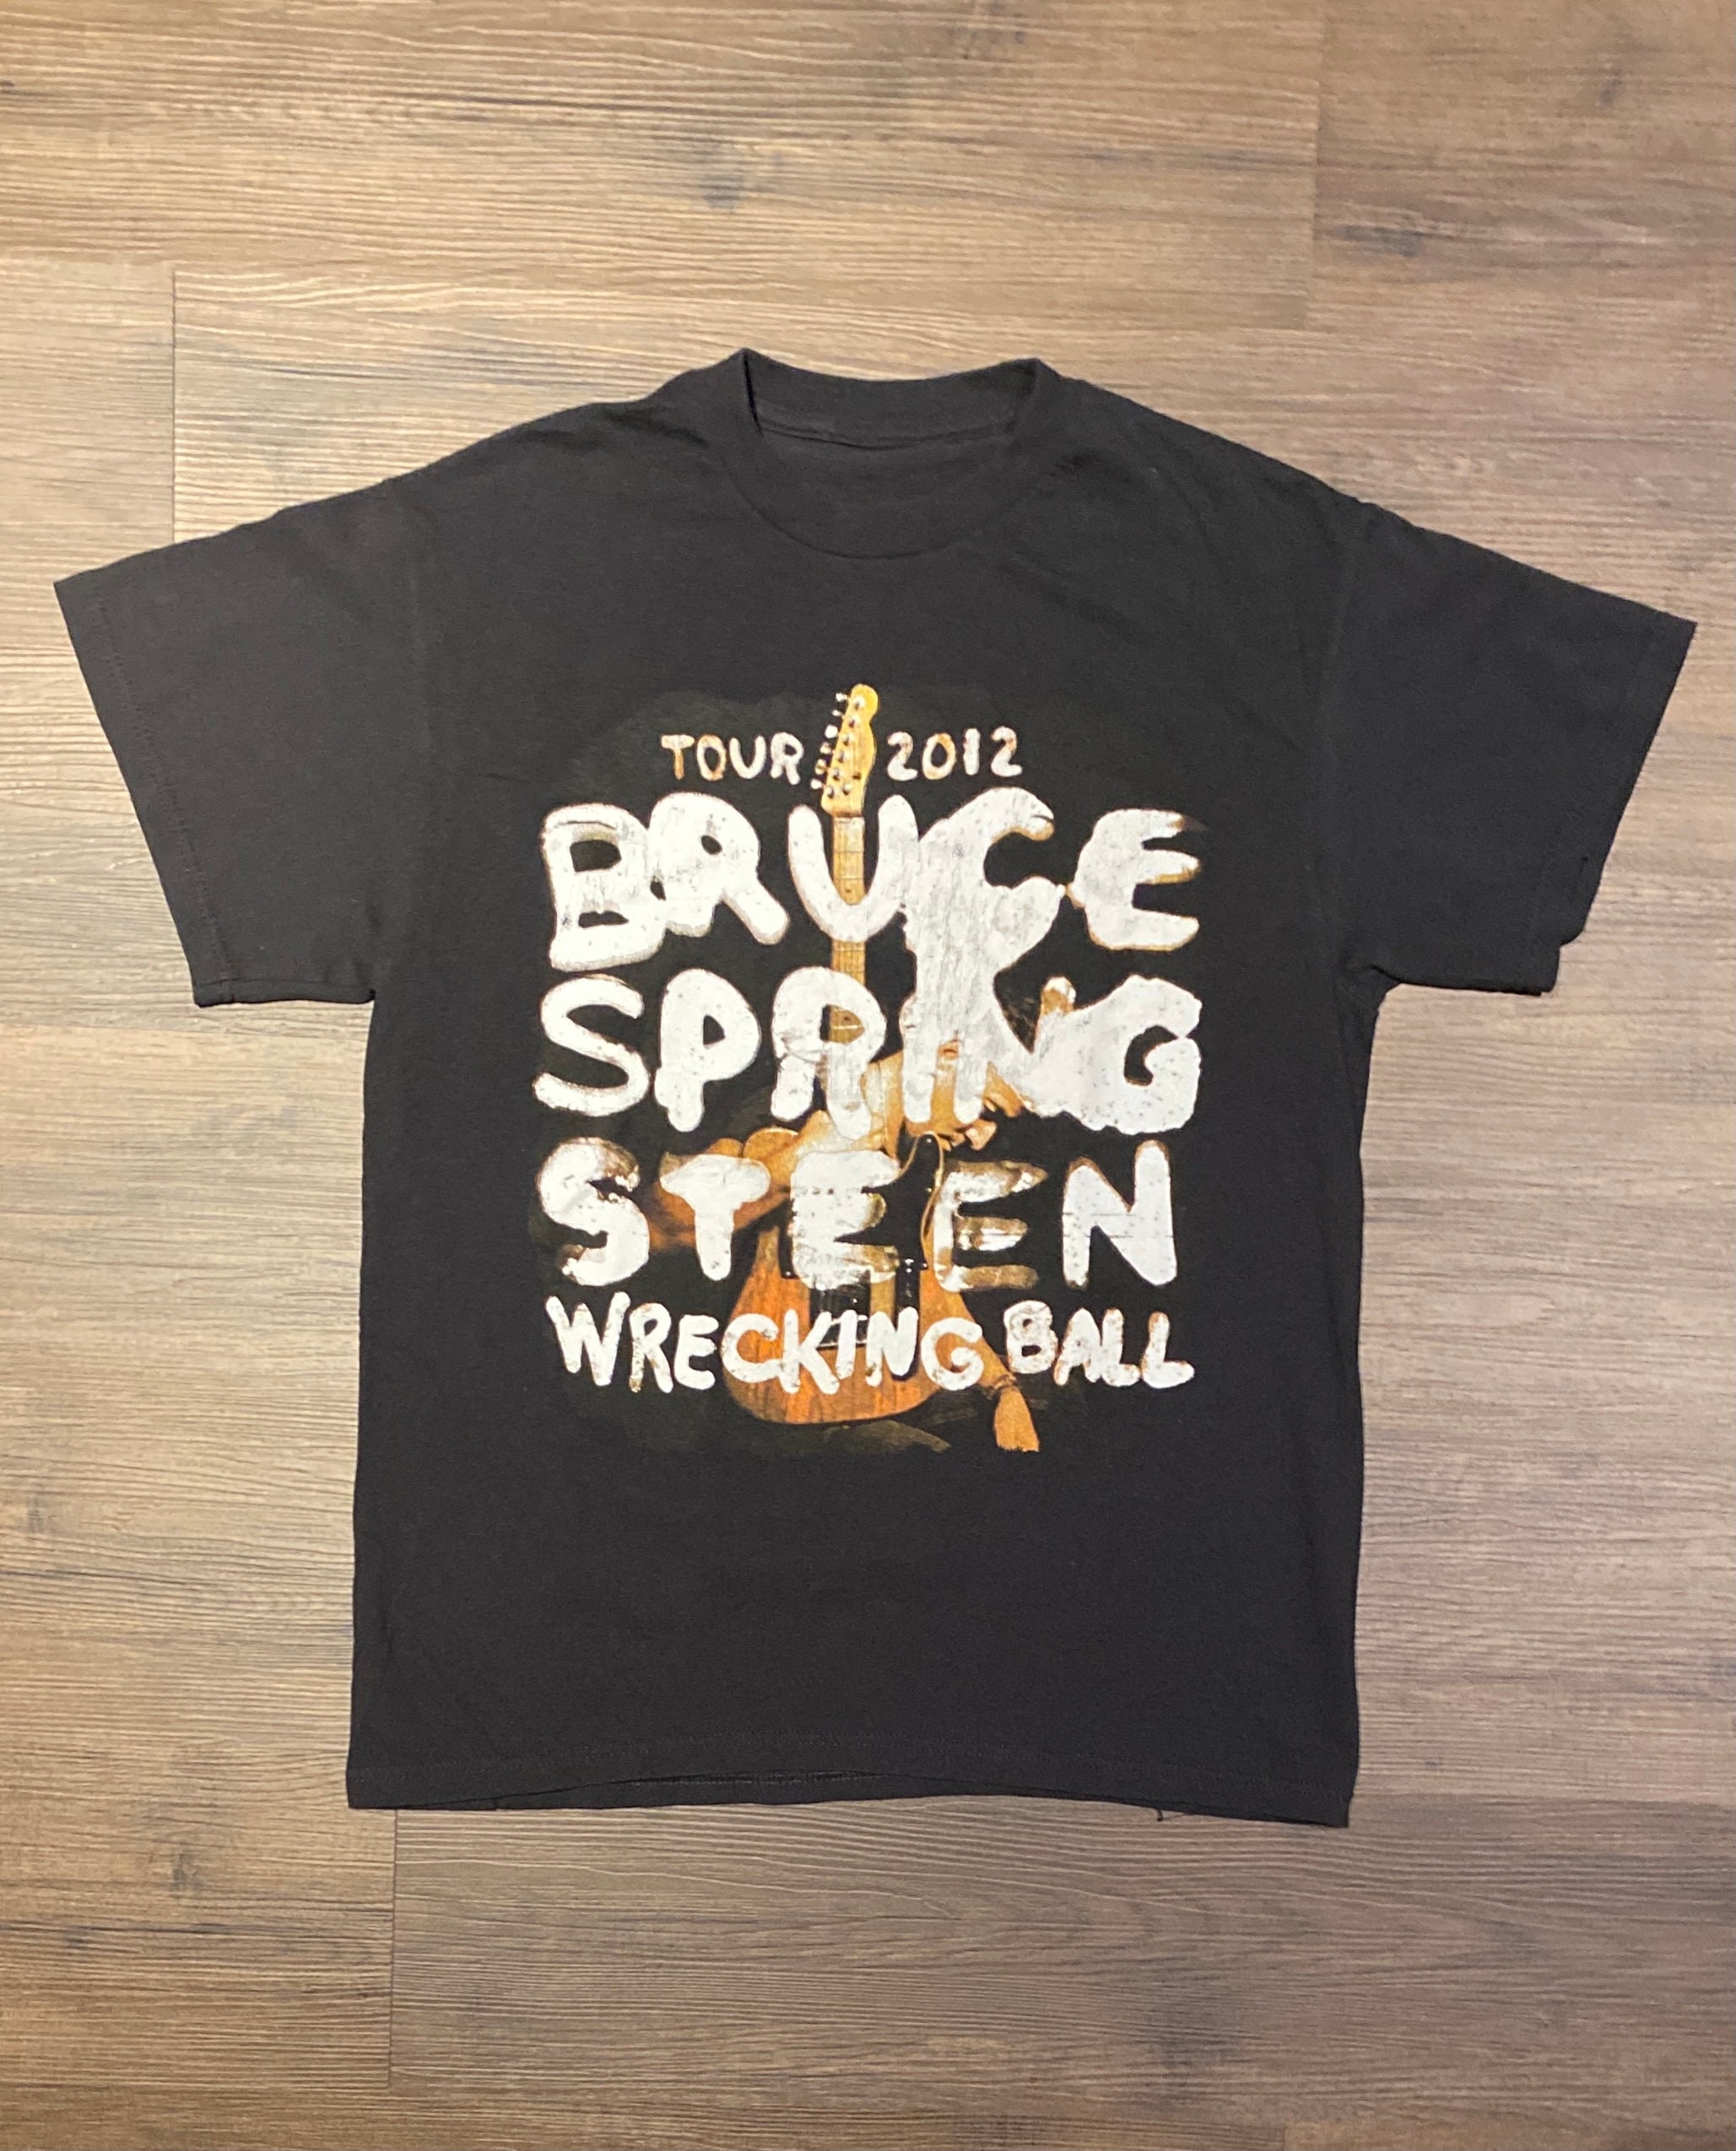 Bruce Springsteen Wrecking Ball Concert Shirt Adult Medium Black Band Tour Rock 